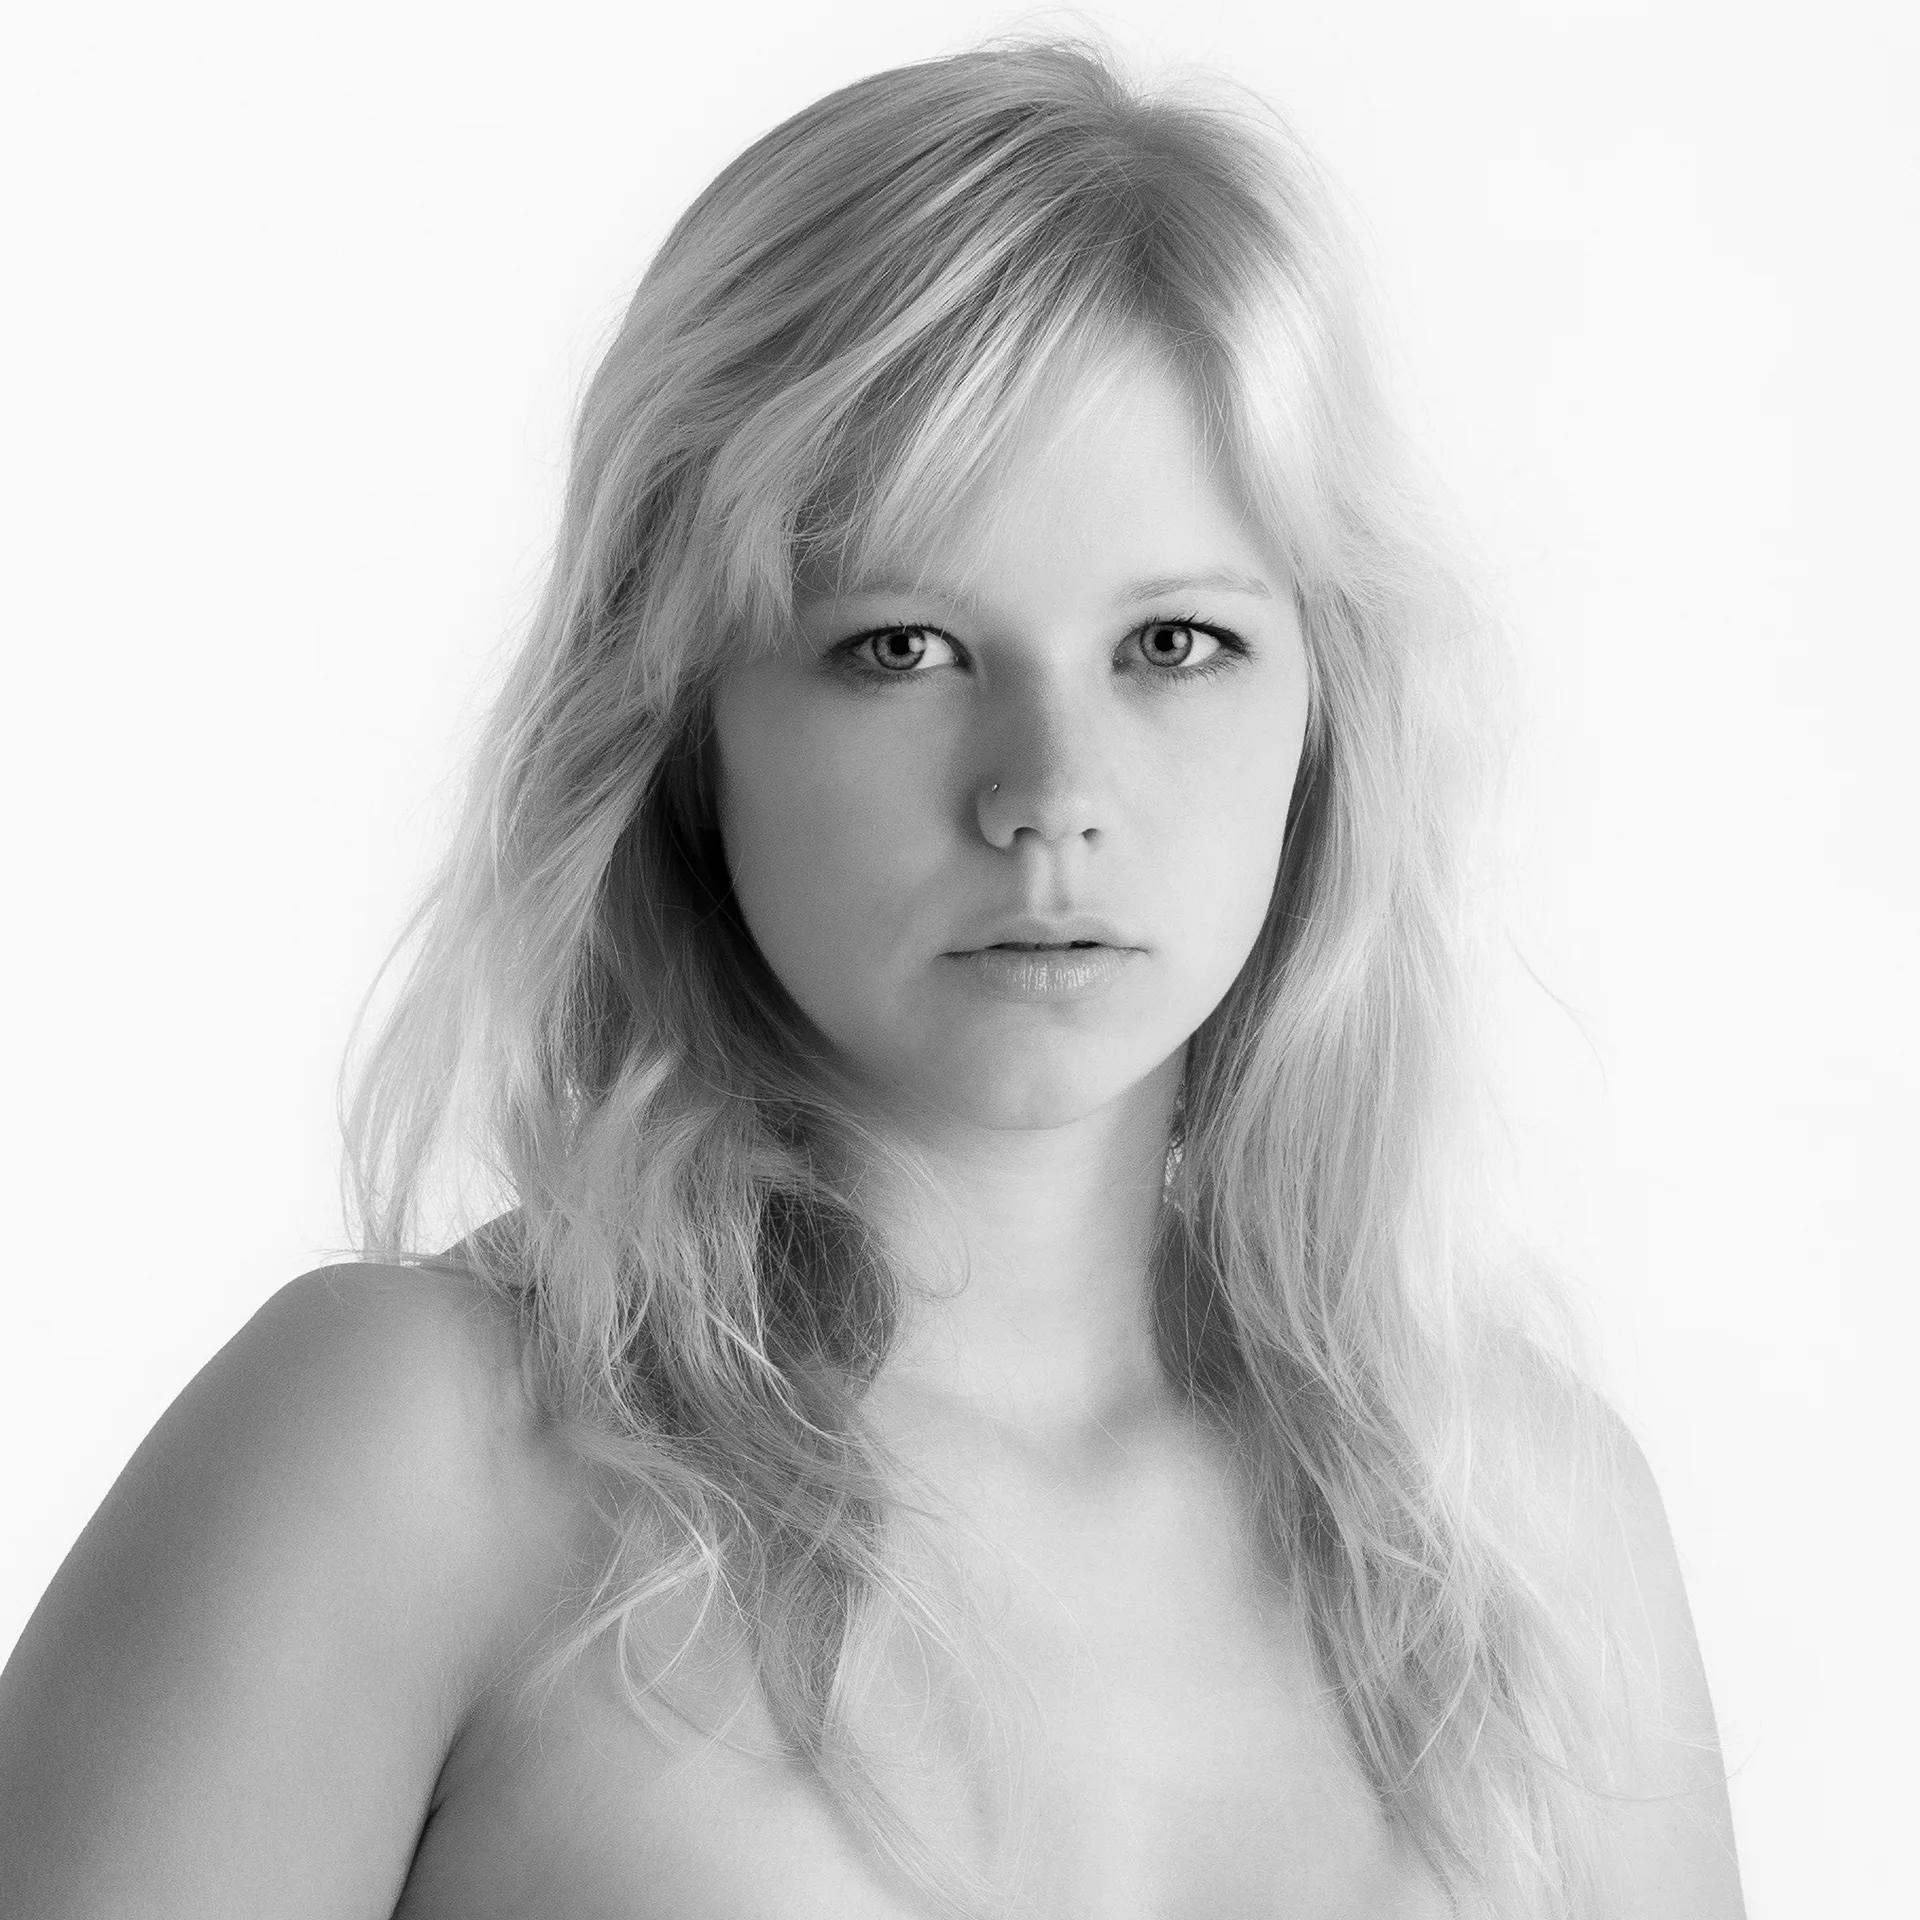 Schwarz-Weiß-Portrait: Gesicht und Schulter einer jungen Frau mit blonden, bis zum Brustansatz reichenden langen Haaren; klarer Blick direkt in die Camera